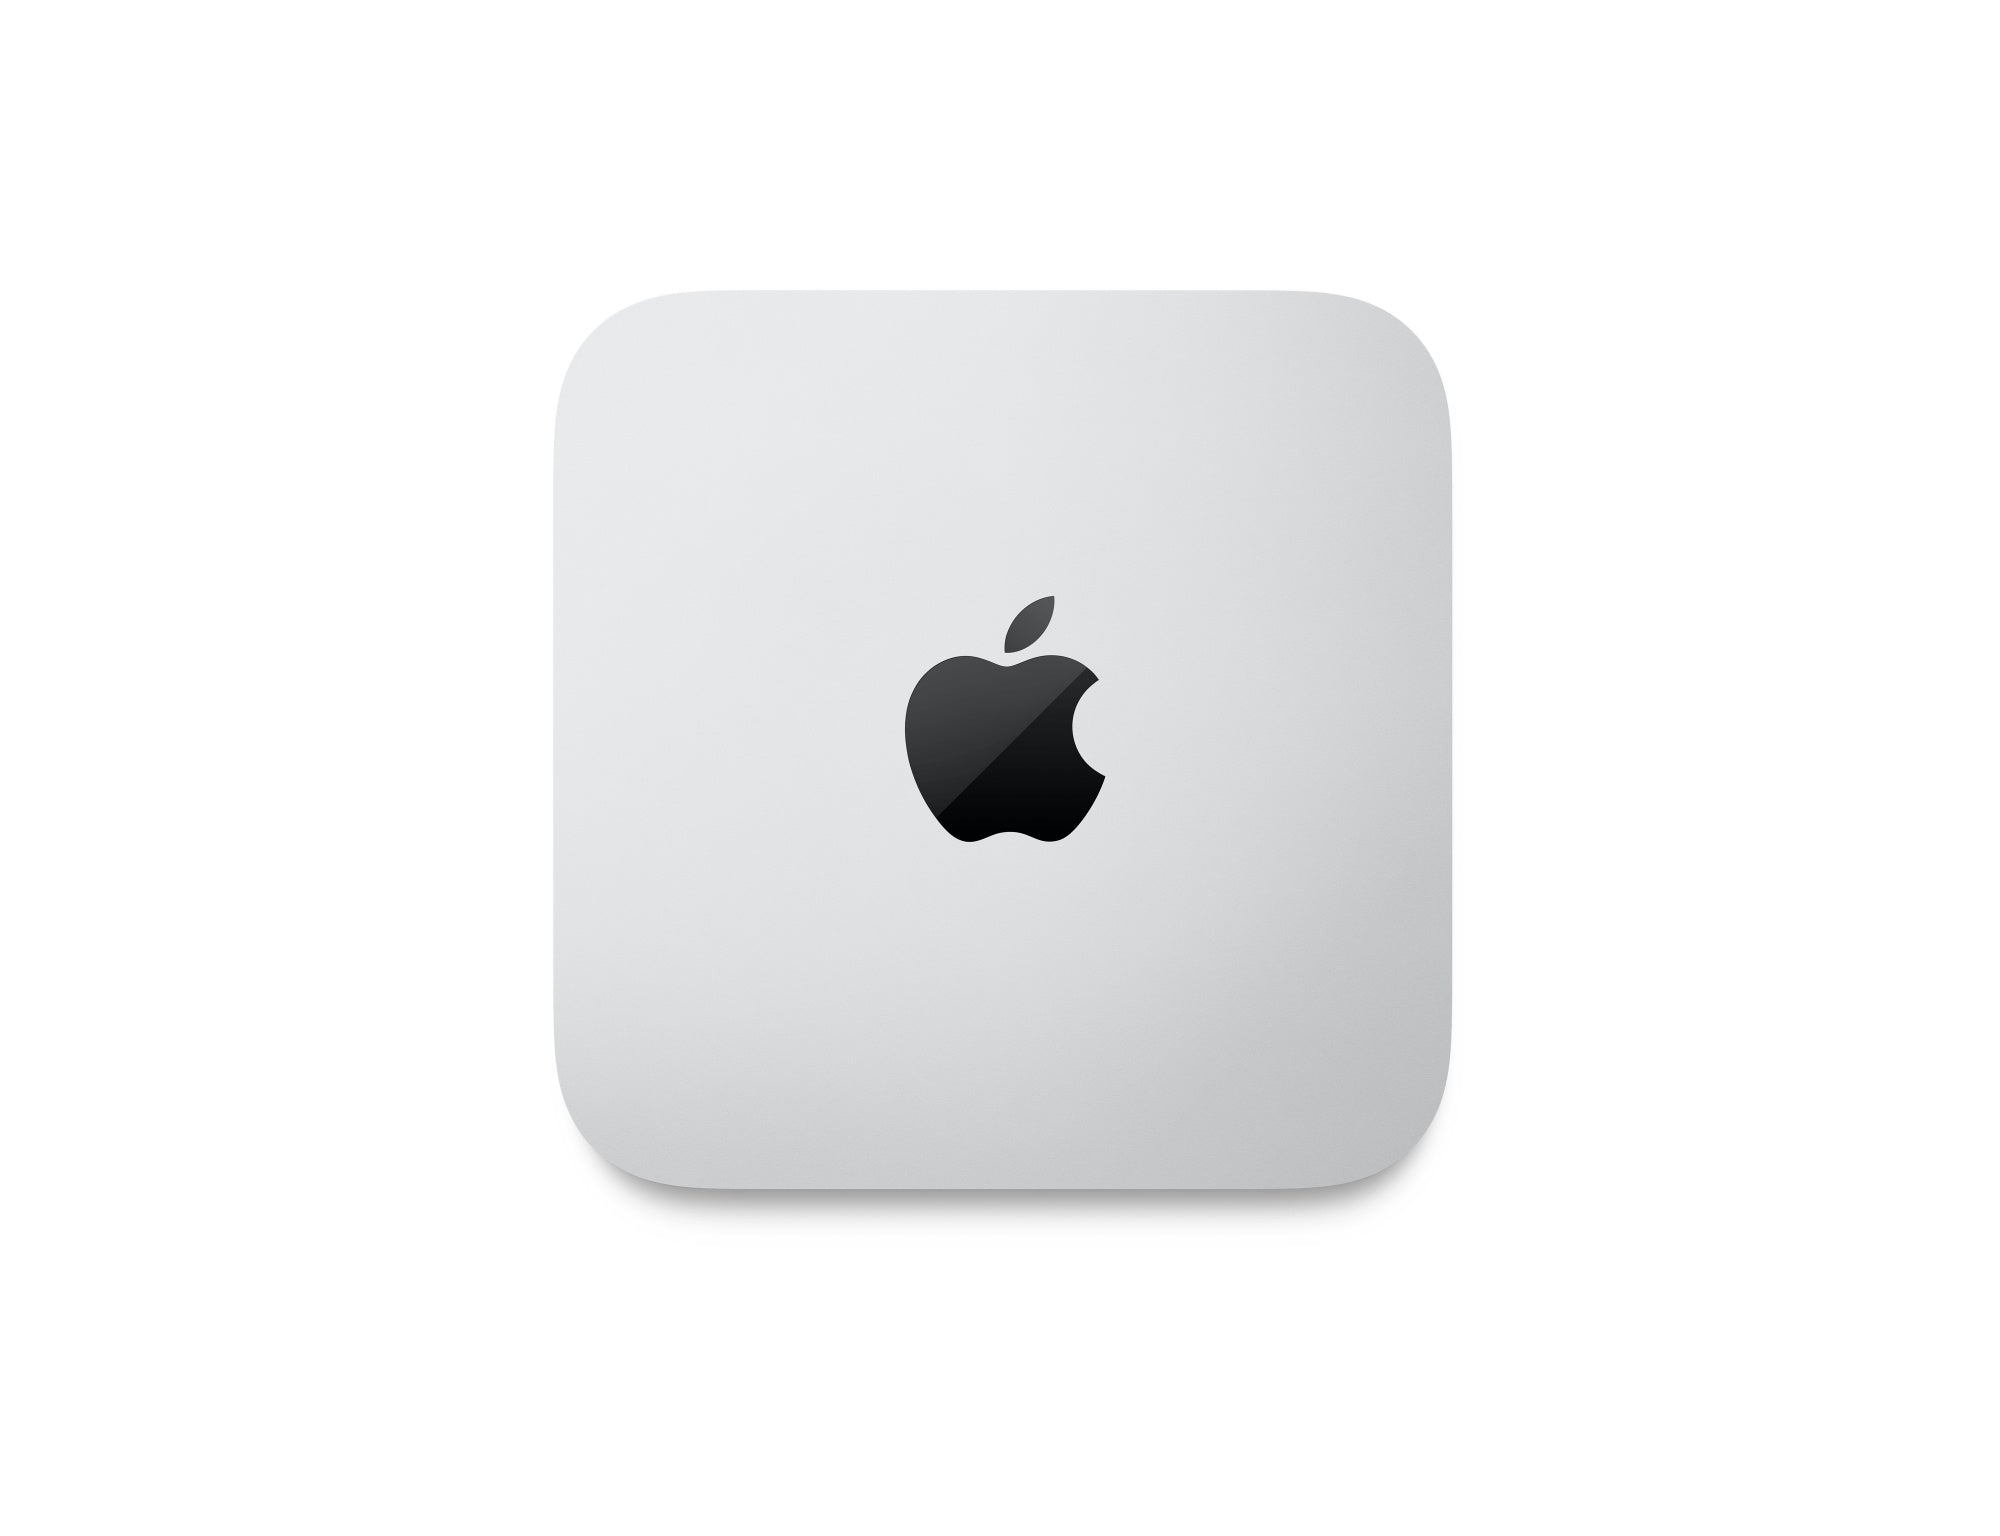 Mac Studio: Apple M2 Max chip with 12-core CPU, 30-core GPU, 512GB SSD